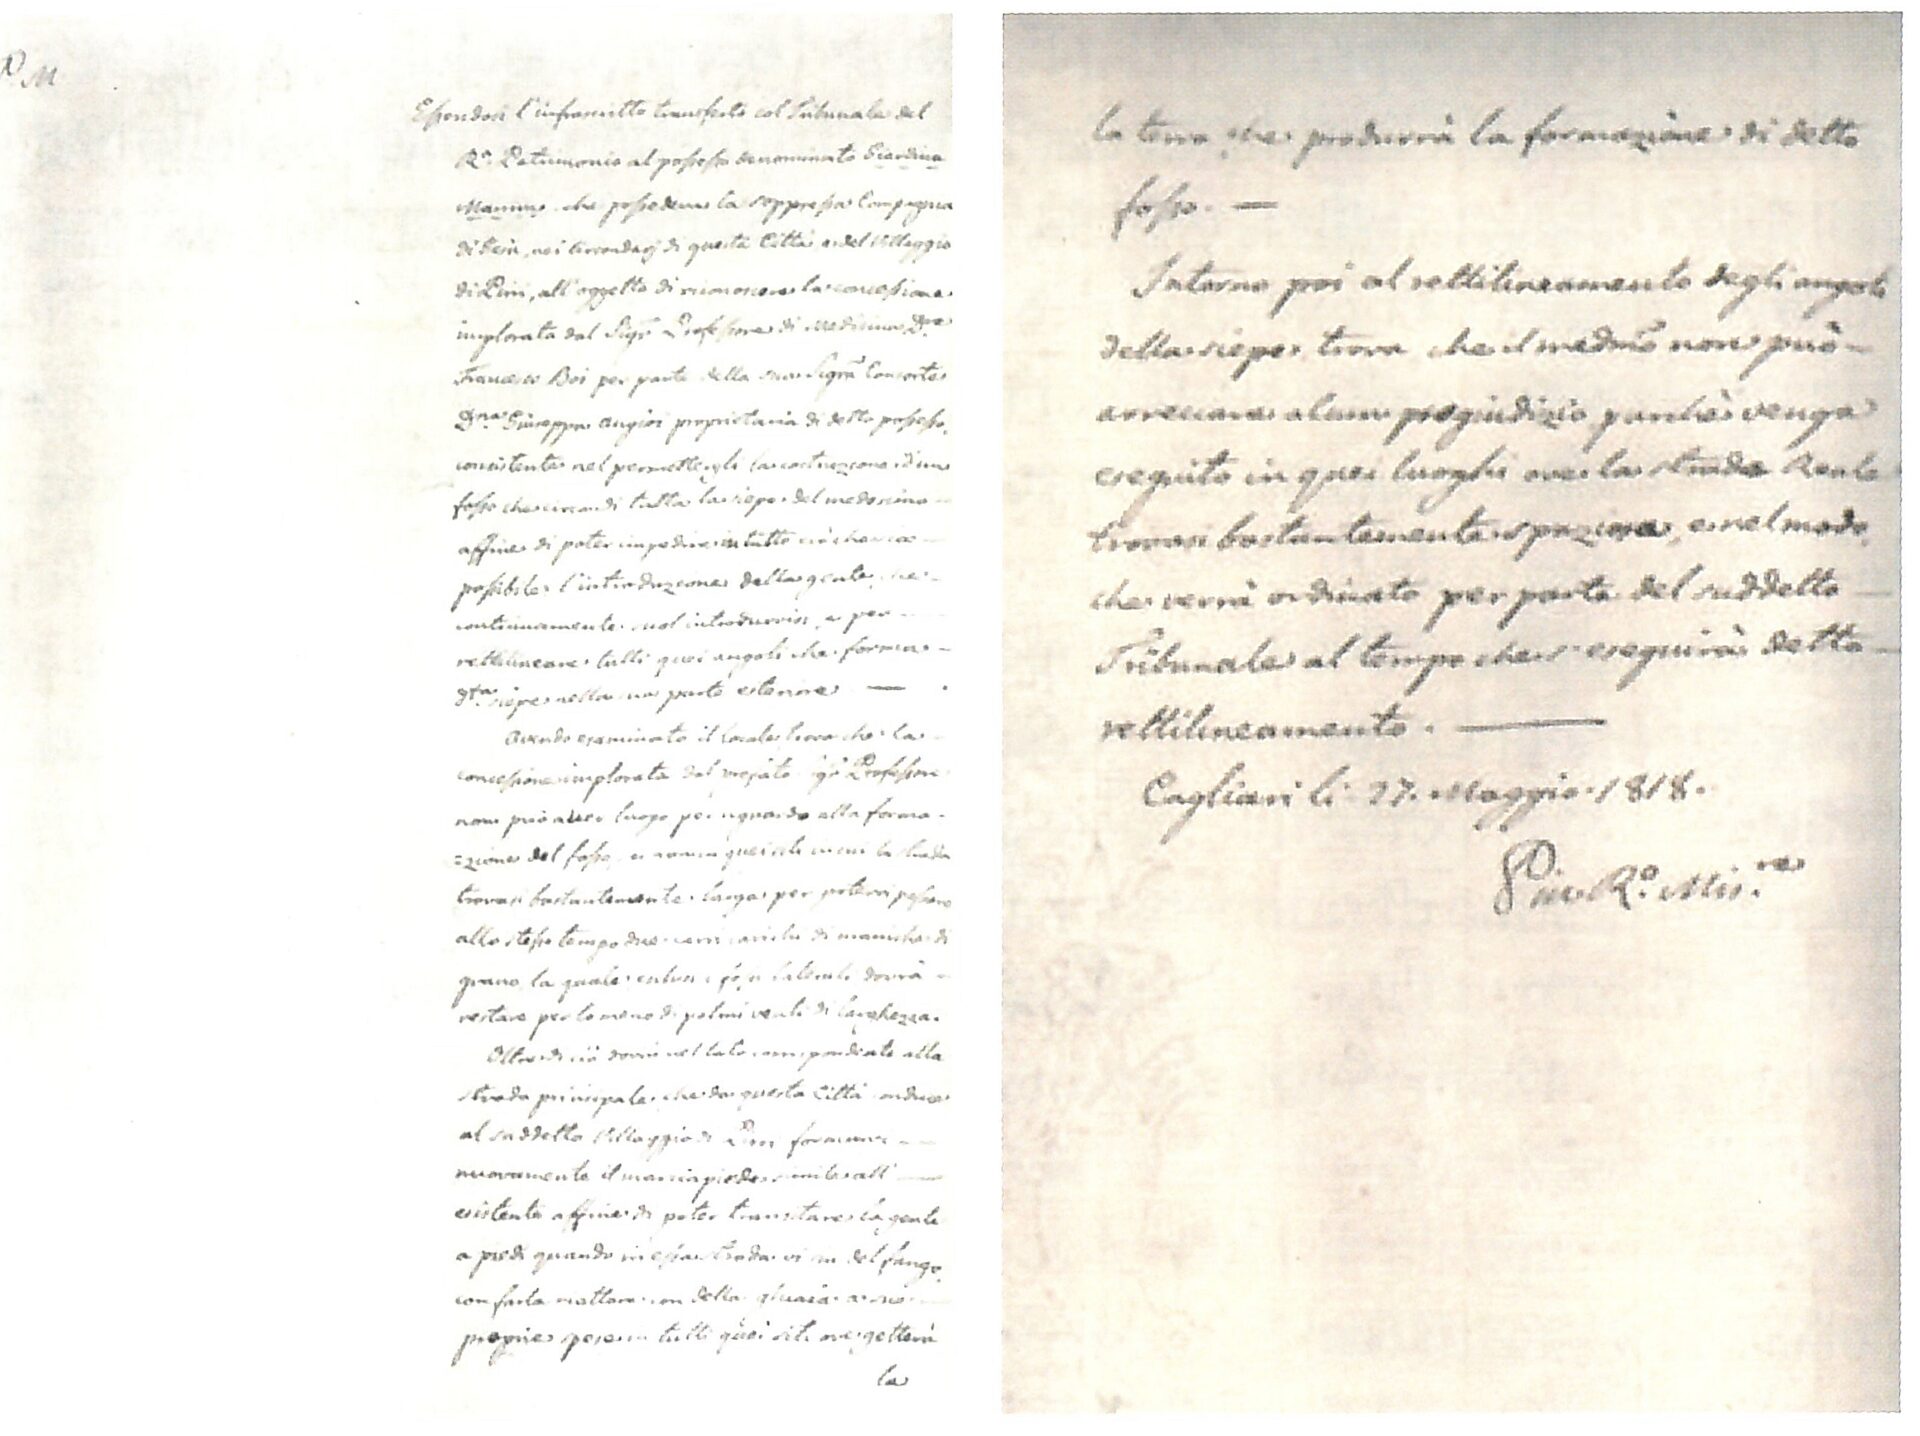 Fig. 3 Archivio di Stato di Cagliari, Regio Demanio, Affari diversi, b.241, fasc. 15, 27 maggio 1818 Cagliari (Documento recto e verso).